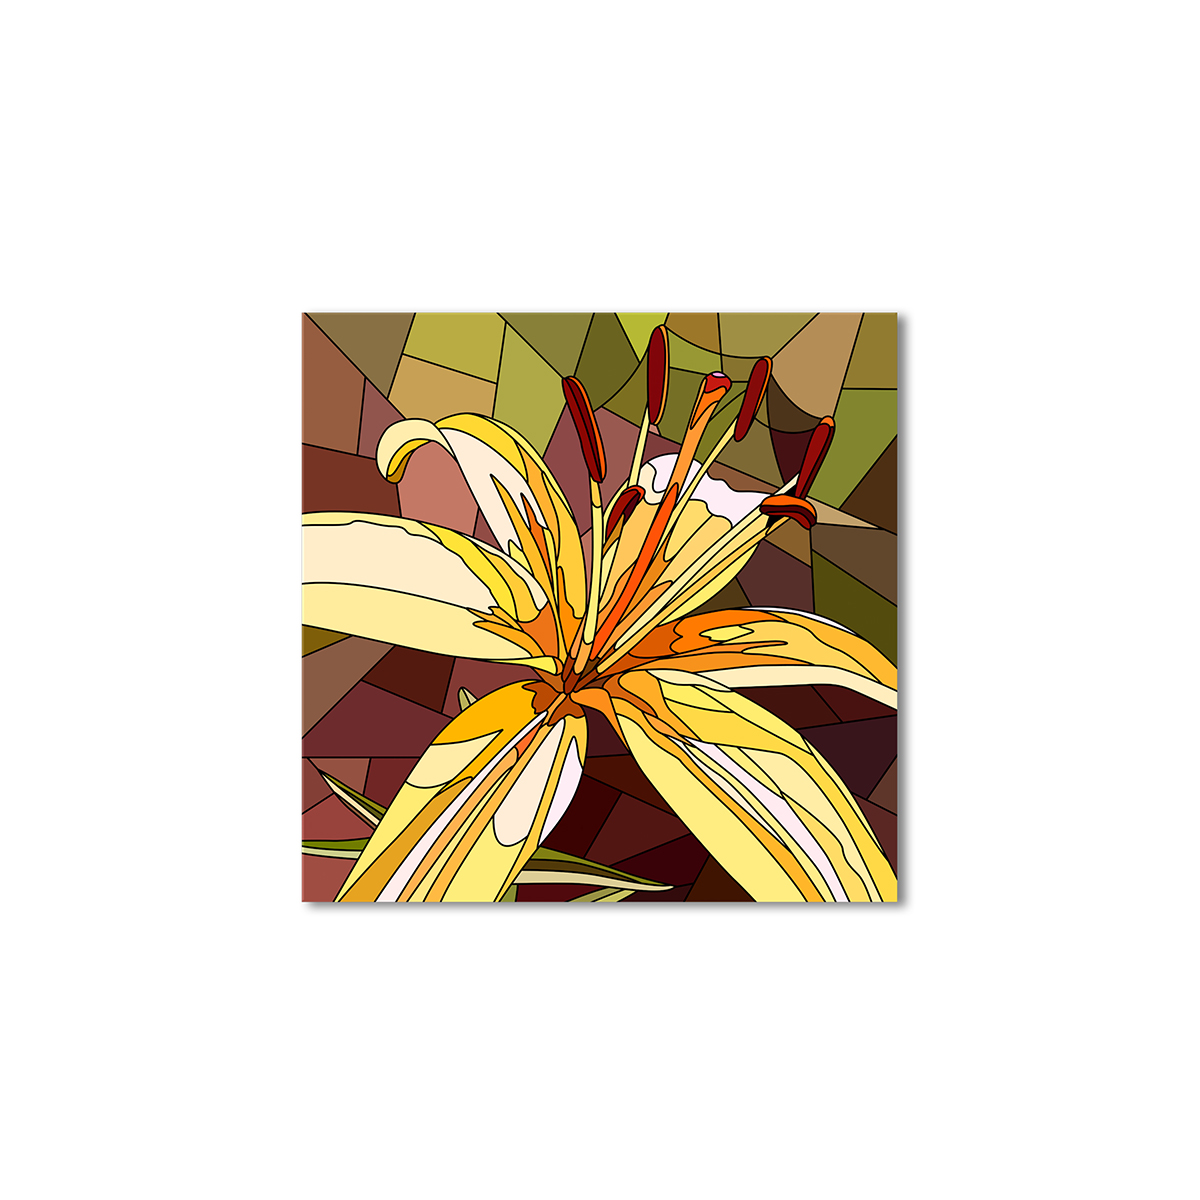 

Модульная картина Artel «Мозаика из цветка лилии» 100x100 см